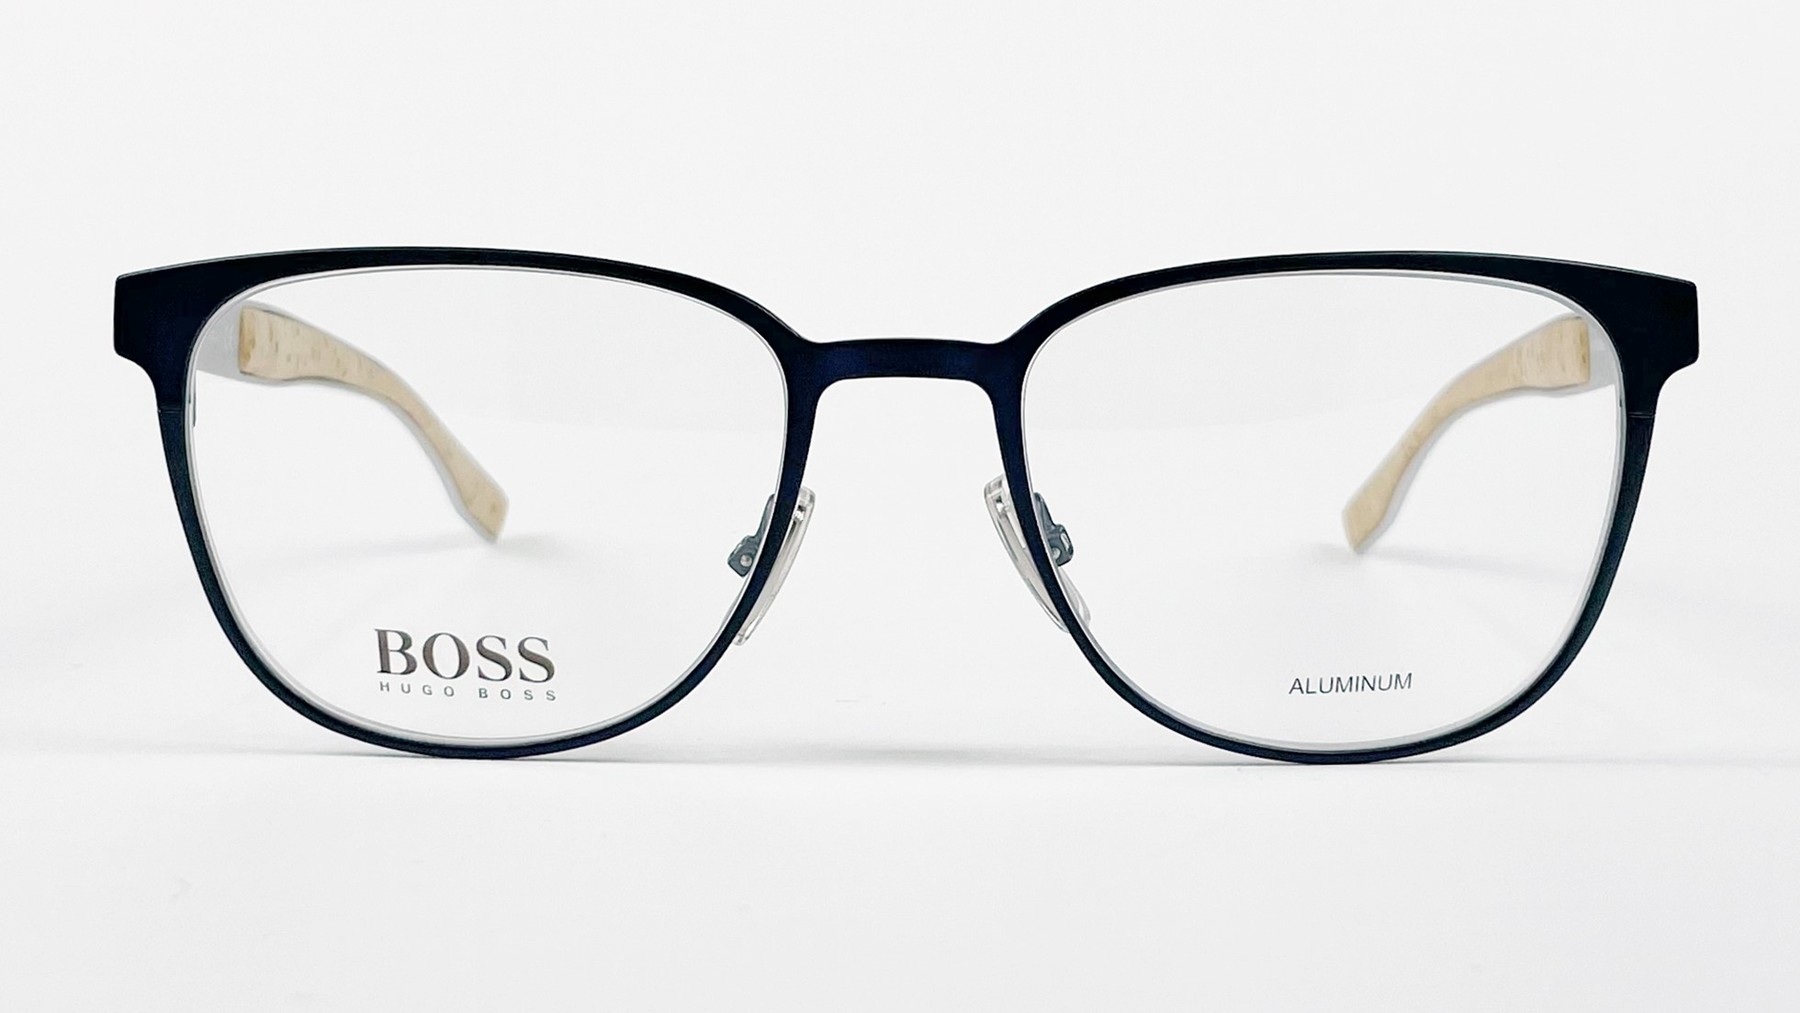 HUGO BOSS 0885 OS4, Korean glasses, sunglasses, eyeglasses, glasses